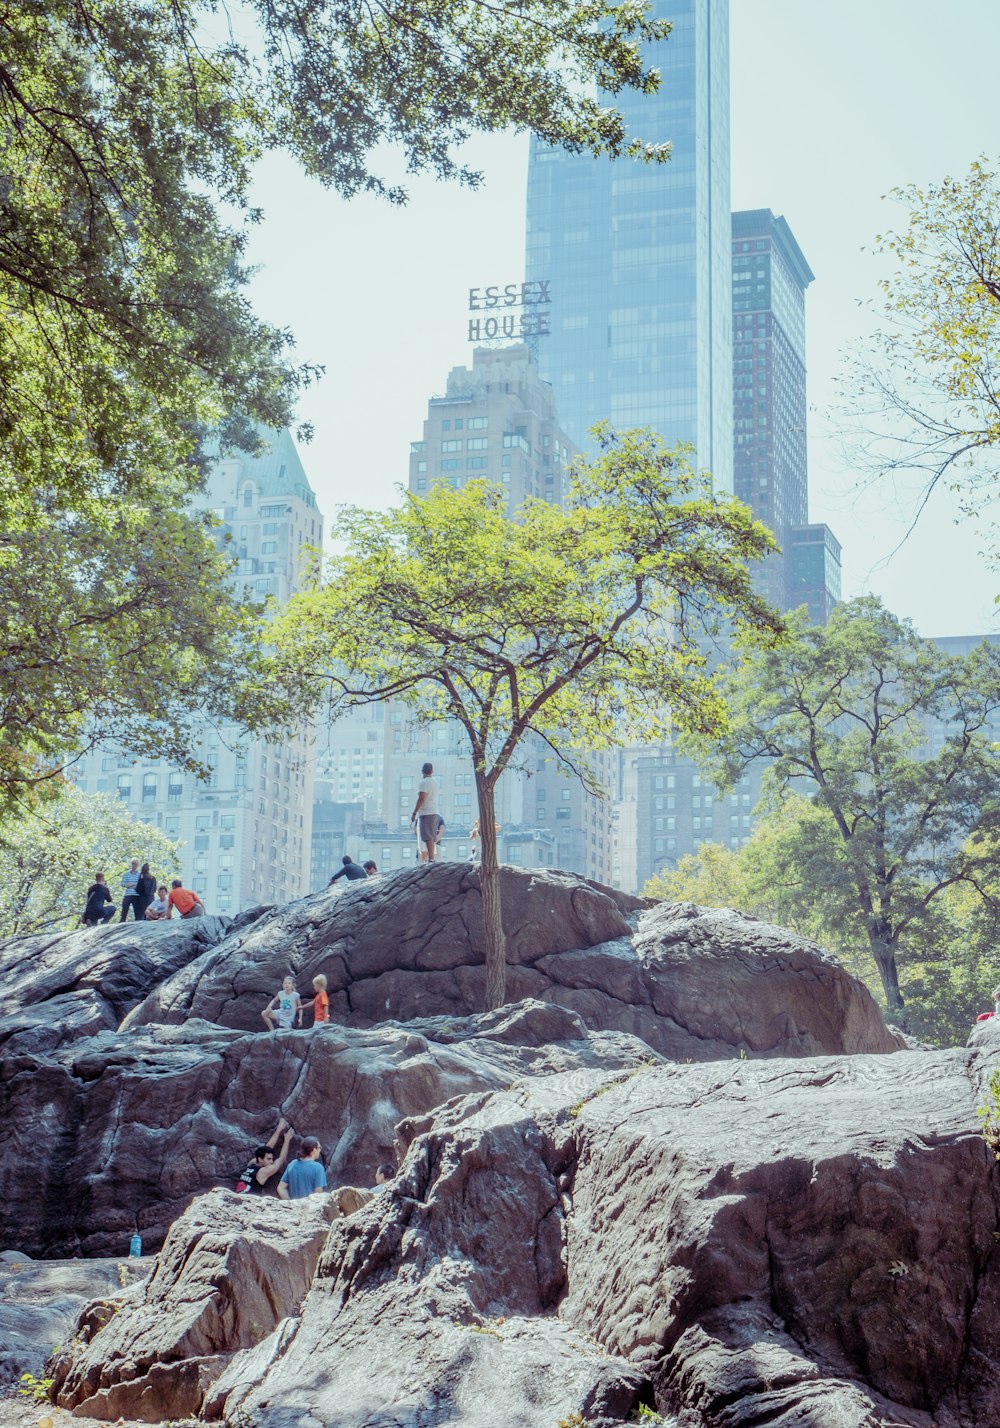 personnes assises sur une formation rocheuse près d’arbres verts pendant la journée